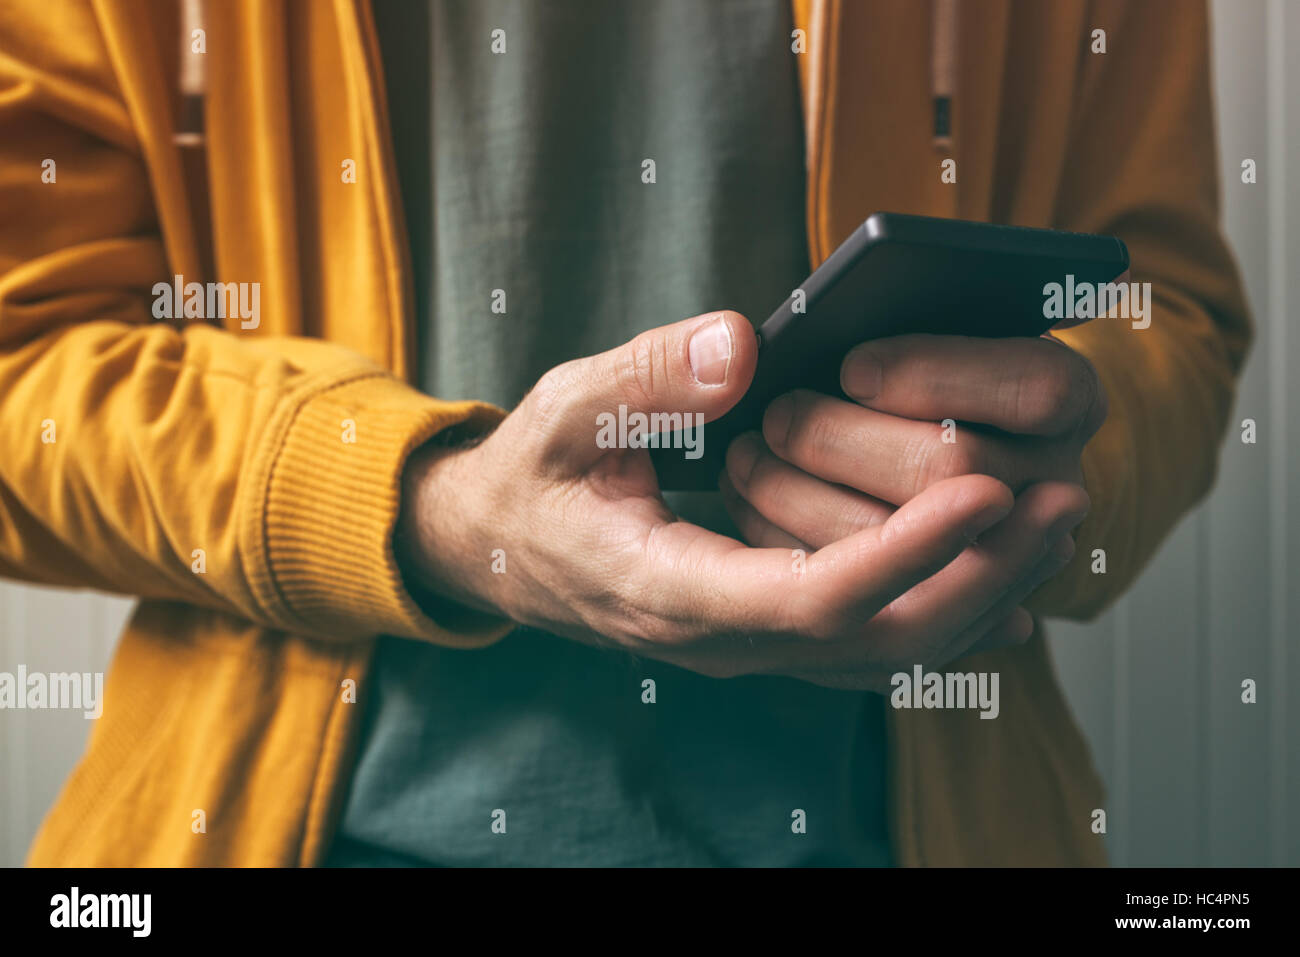 Entsperren Smartphone mit Fingerabdruck-Scan-Sensor, Mann mit moderner Technologie Sicherheitsfeature zu Zugang zu authentifizieren und Gerät verwenden Stockfoto